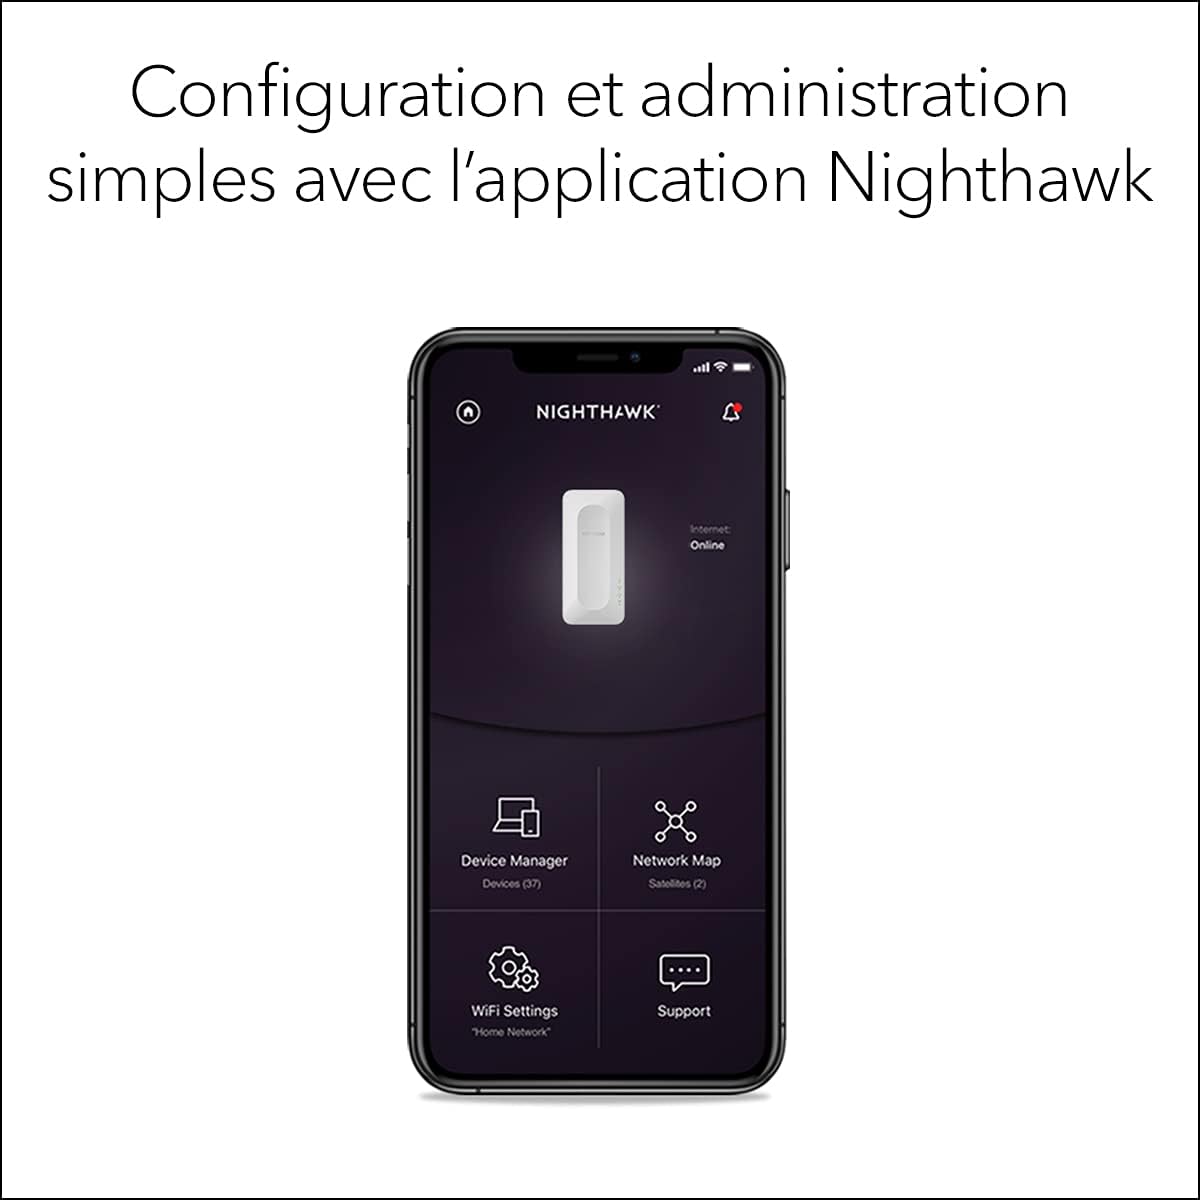 NETGEAR Répéteur WiFi 6 (EAX12), Amplificateur WiFi AX1600 – Votre  partenaire hi-tech !